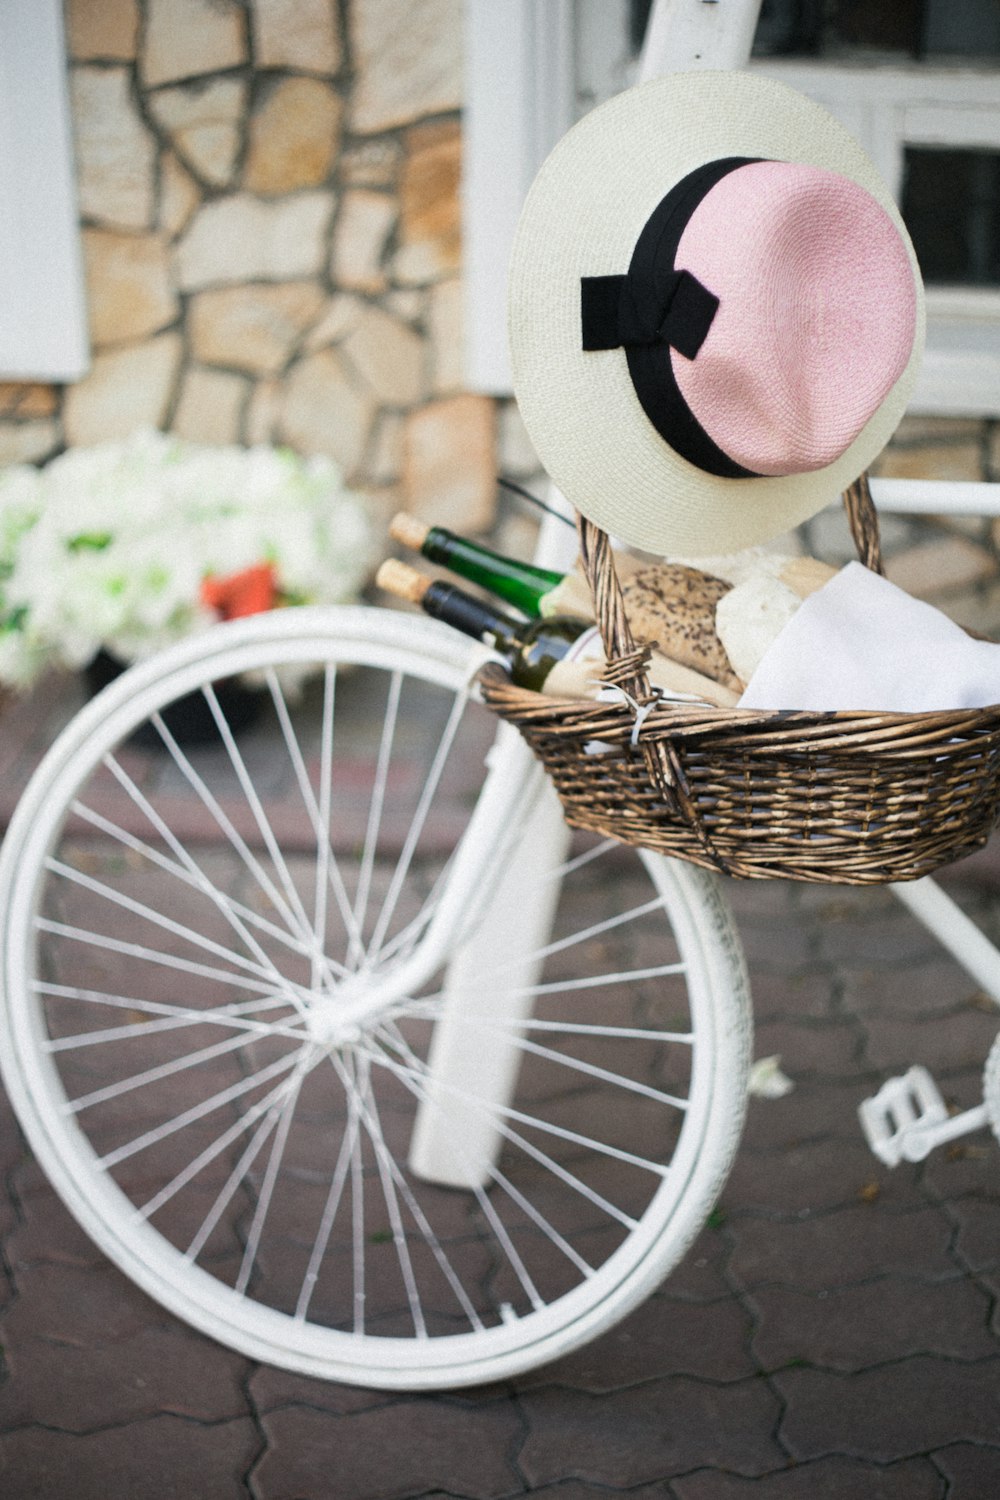 brauner Weidenkorb mit weißem, pinkem und schwarzem Sonnenhut neben weißem Fahrrad